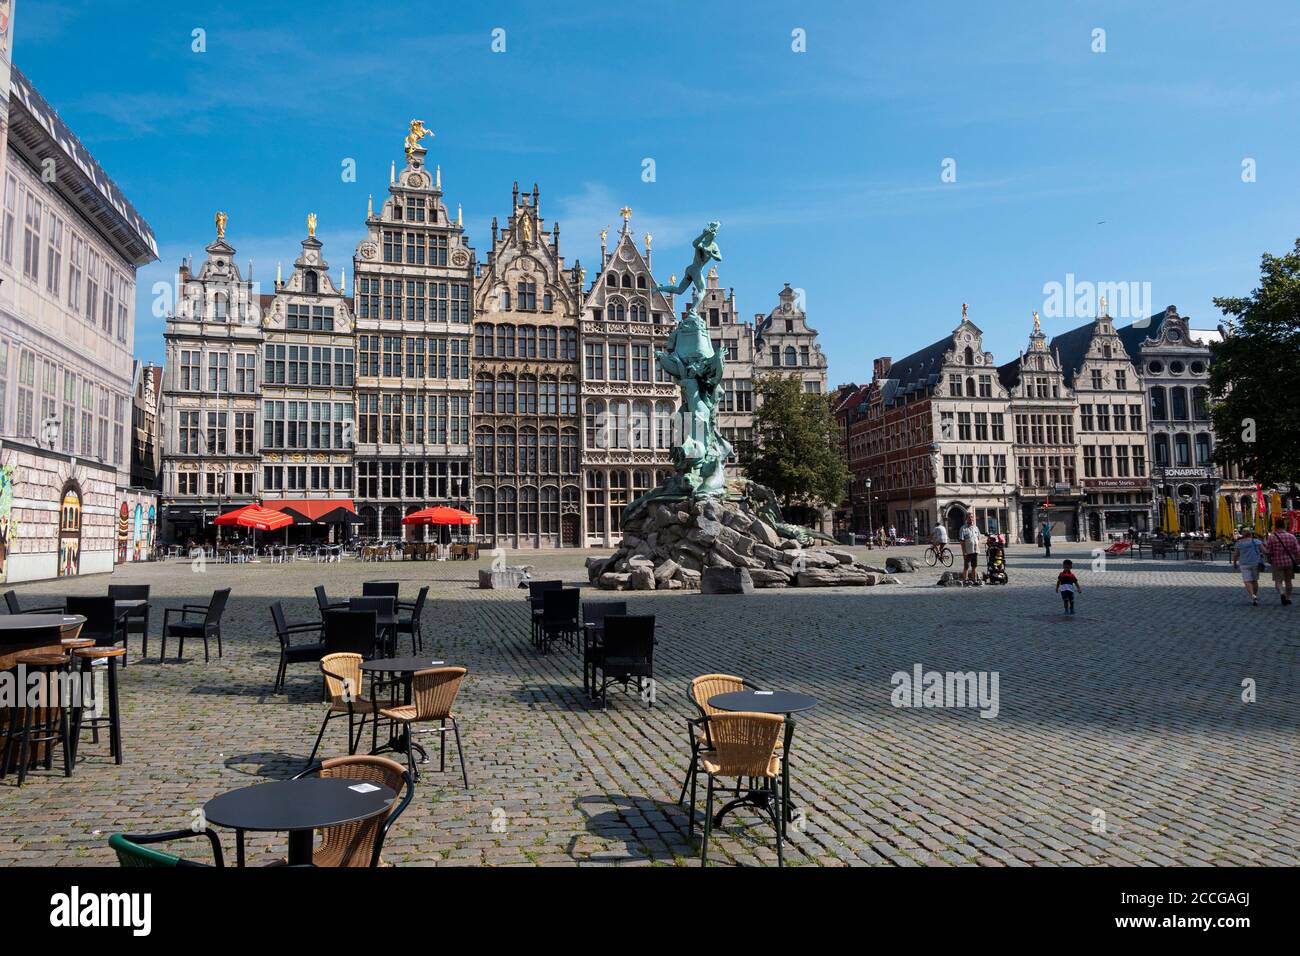 Anvers, Belgique, 16 août 2020, photo d'une place de marché presque vide à Anvers Banque D'Images